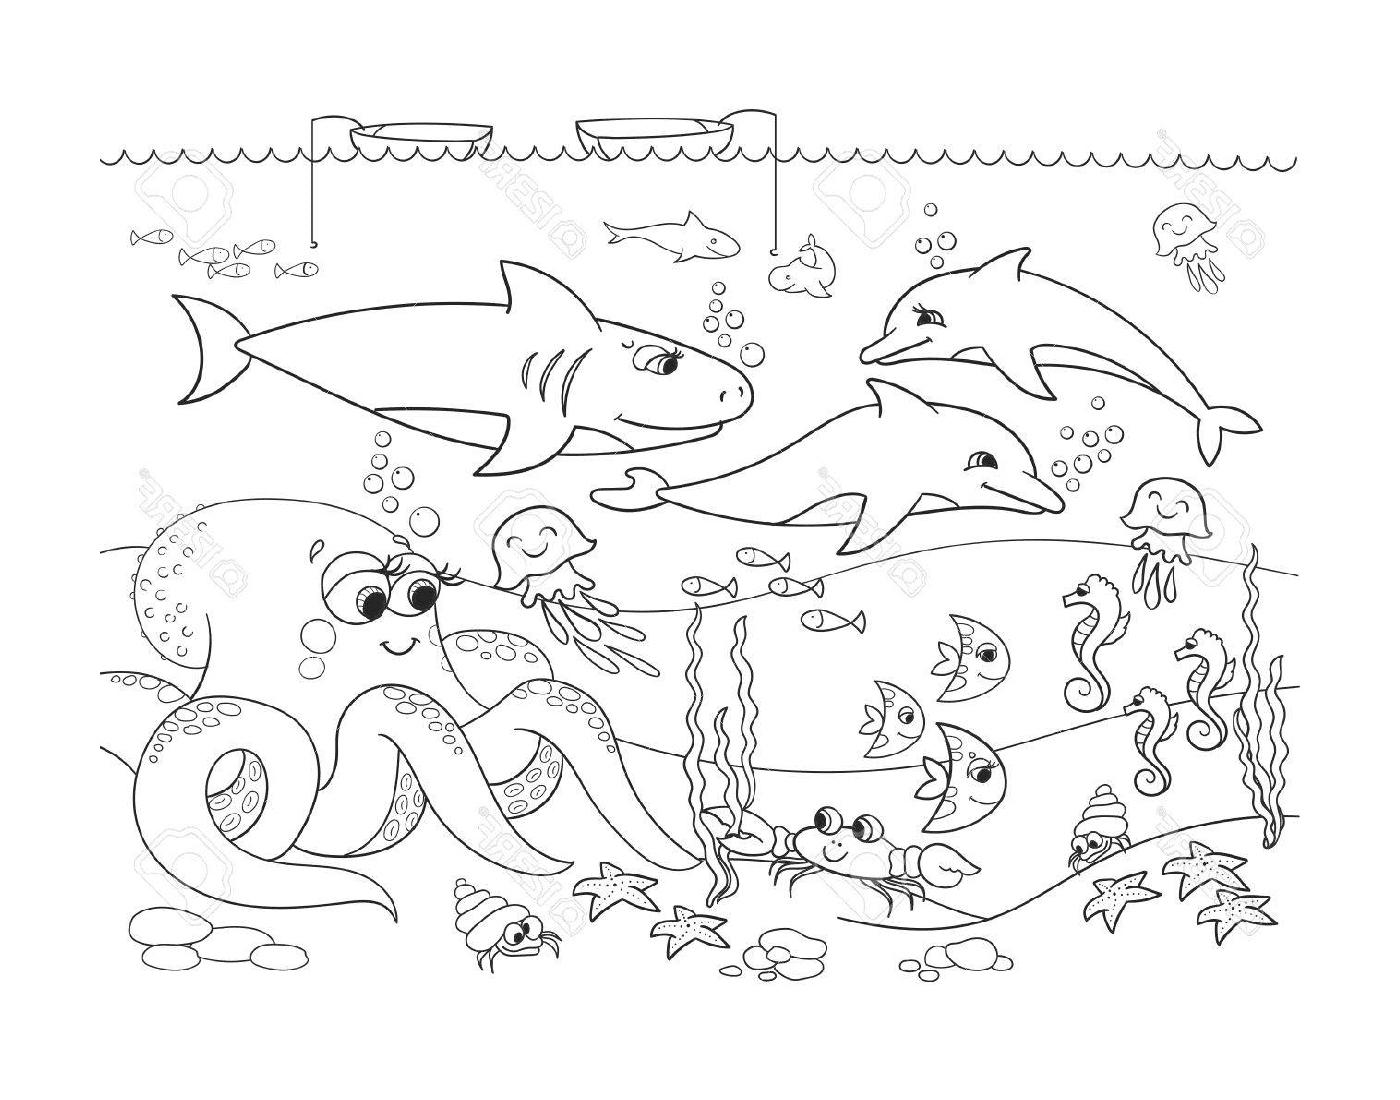  подводная сцена с множеством разных животных 